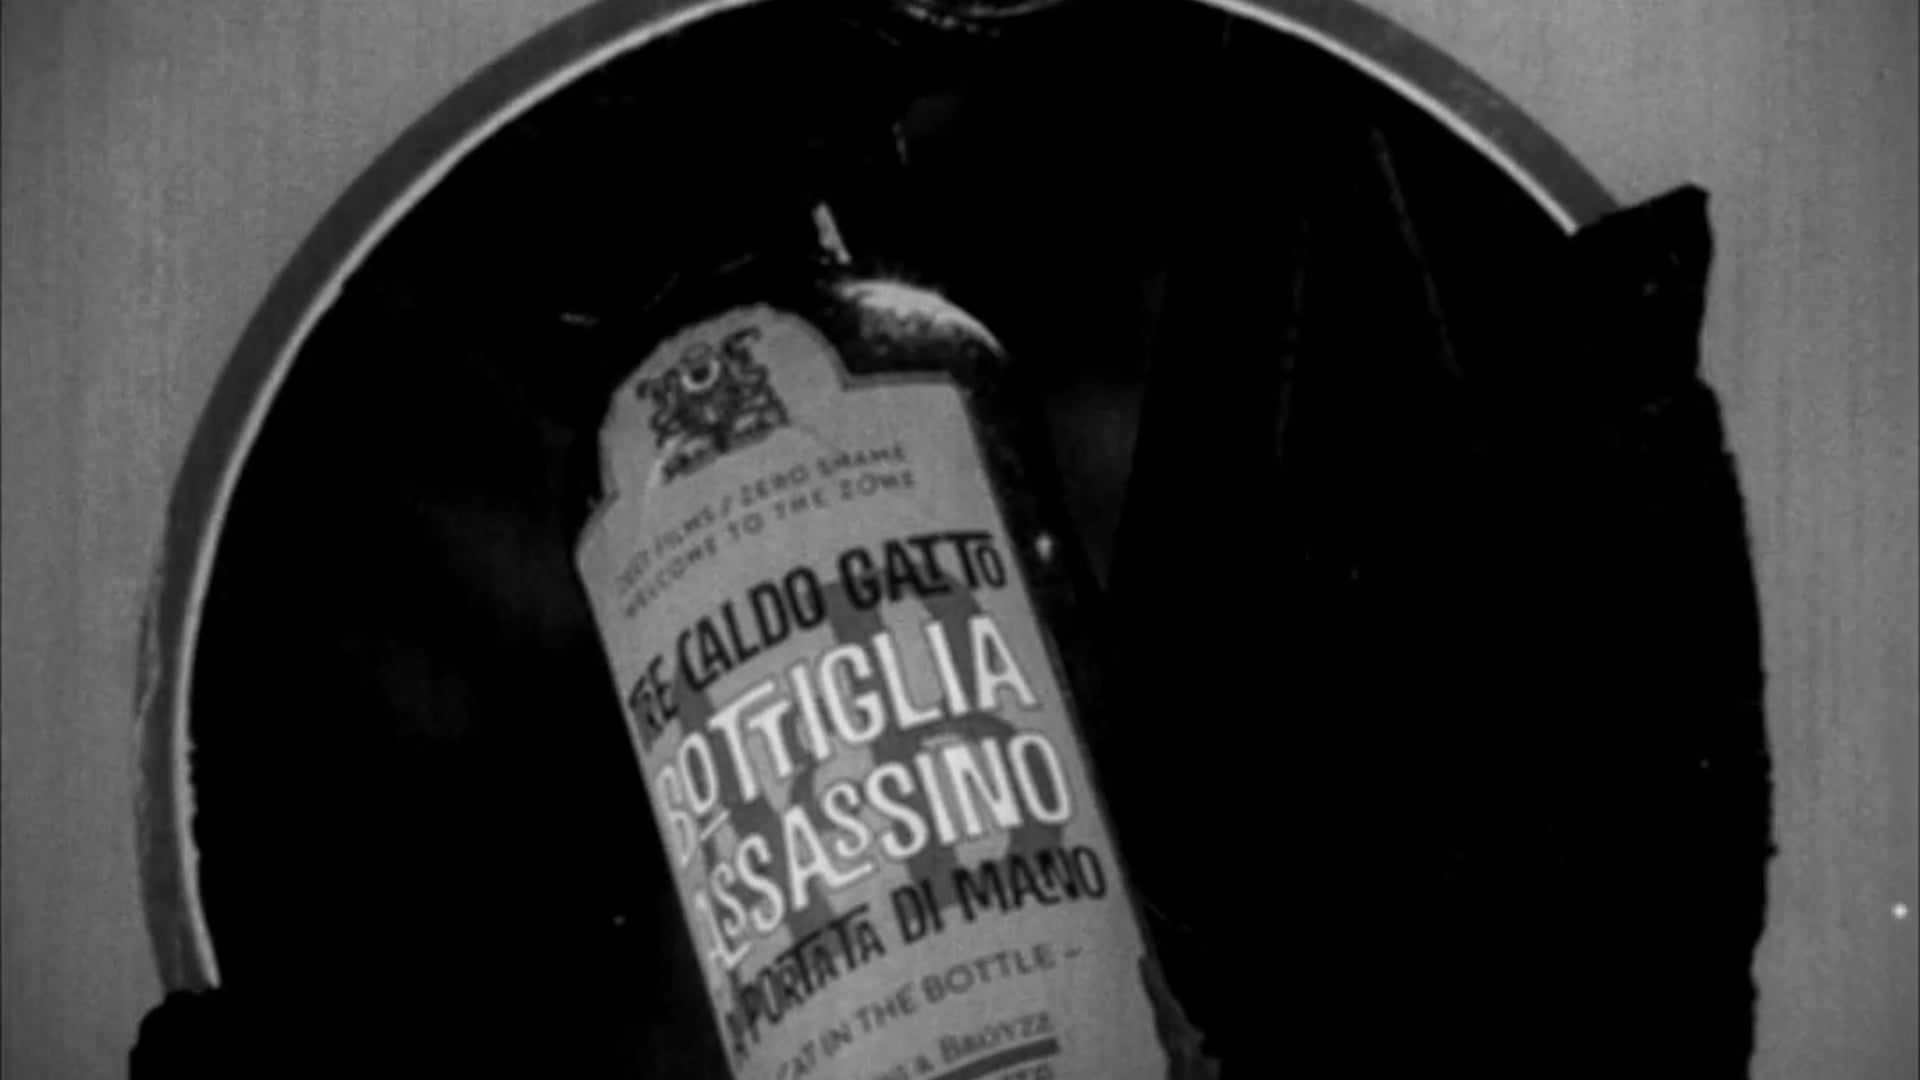 Tre Caldo Gatto Bottiglia Assassino A Portata Di Mano – Cat i in the Bottle – Animated poster